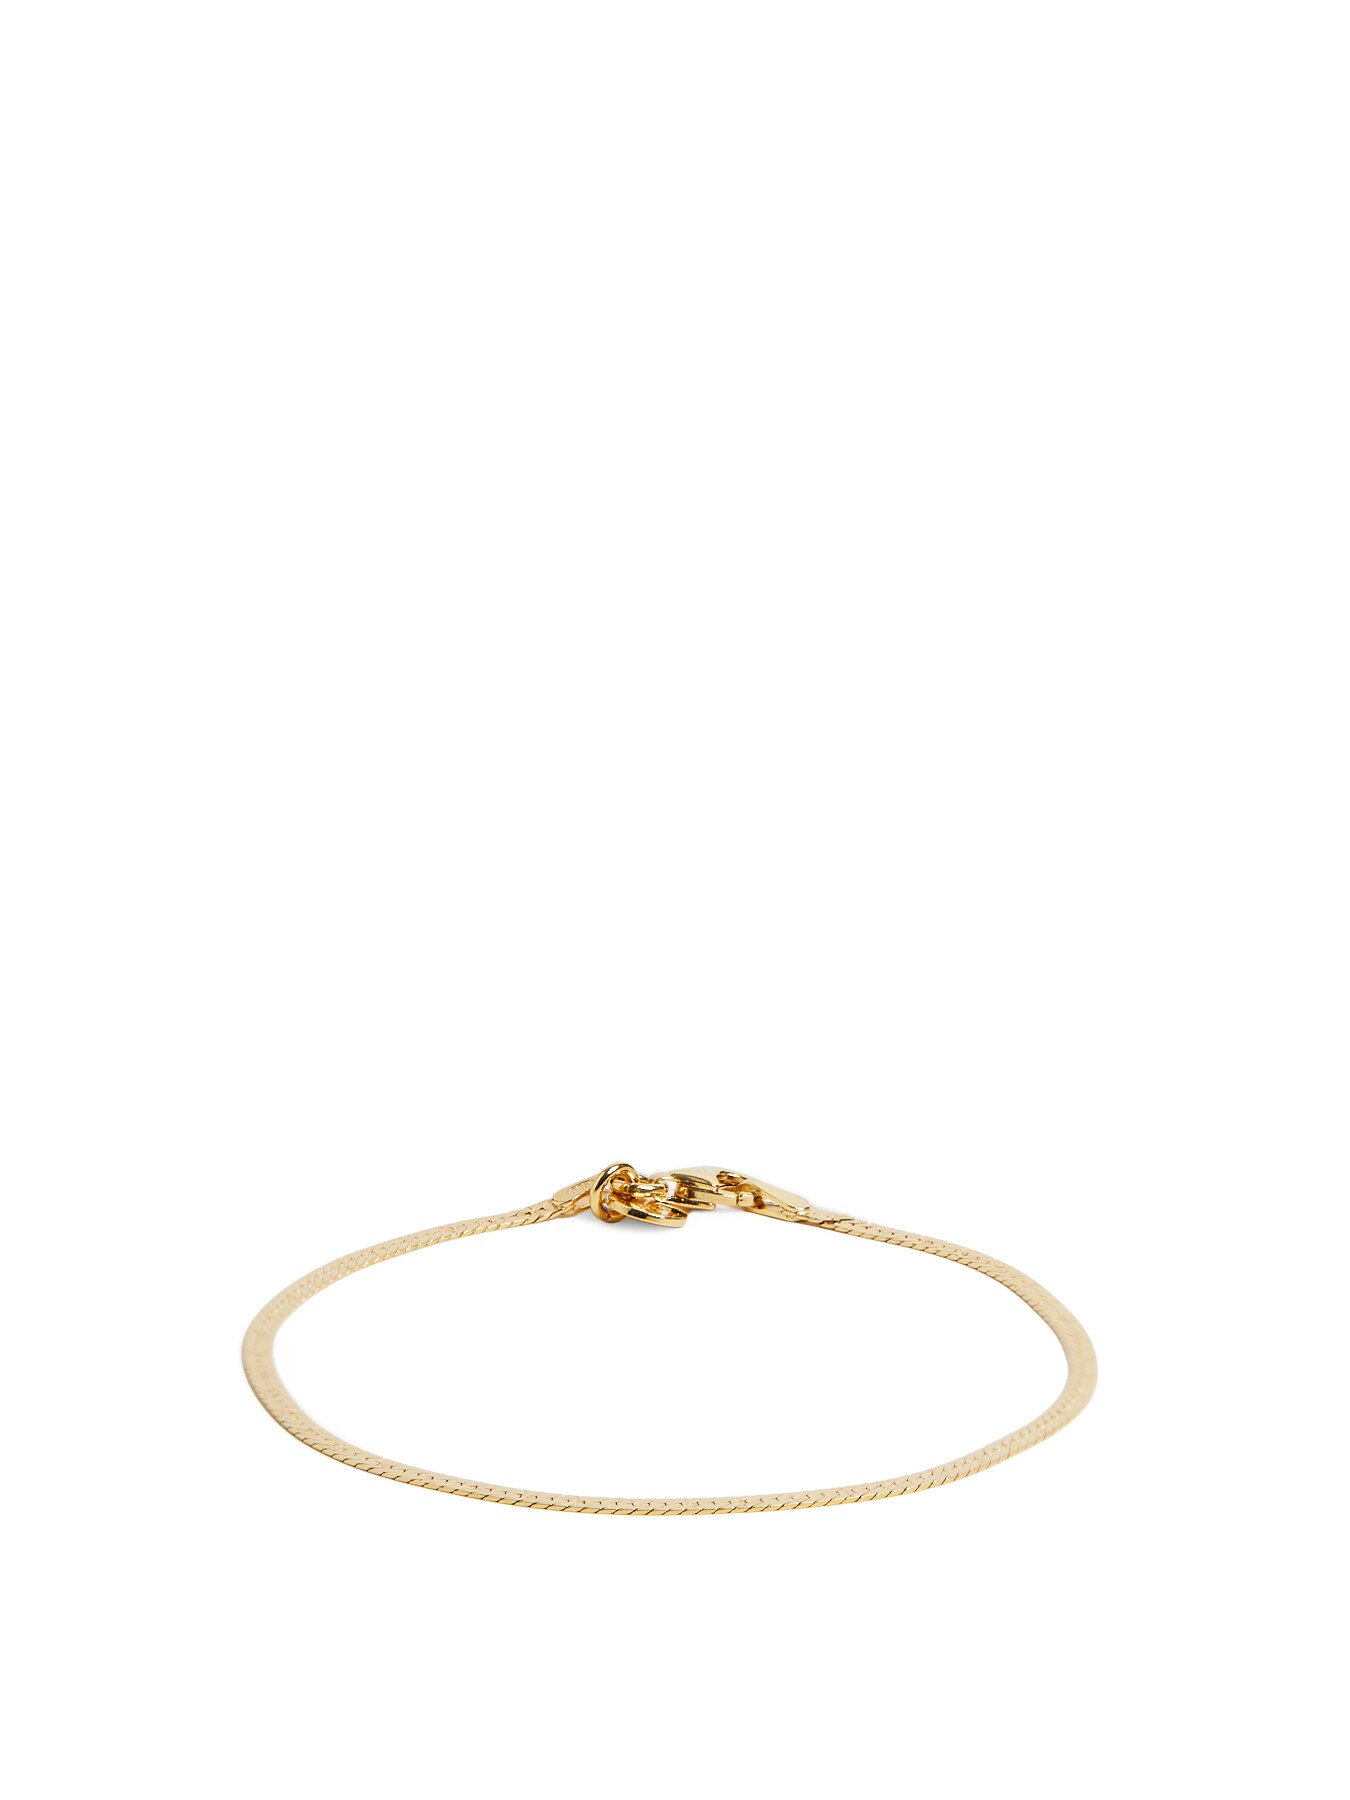 Daisy London Women's Estee Lalonde Flat Snake Chain Bracelet Gold